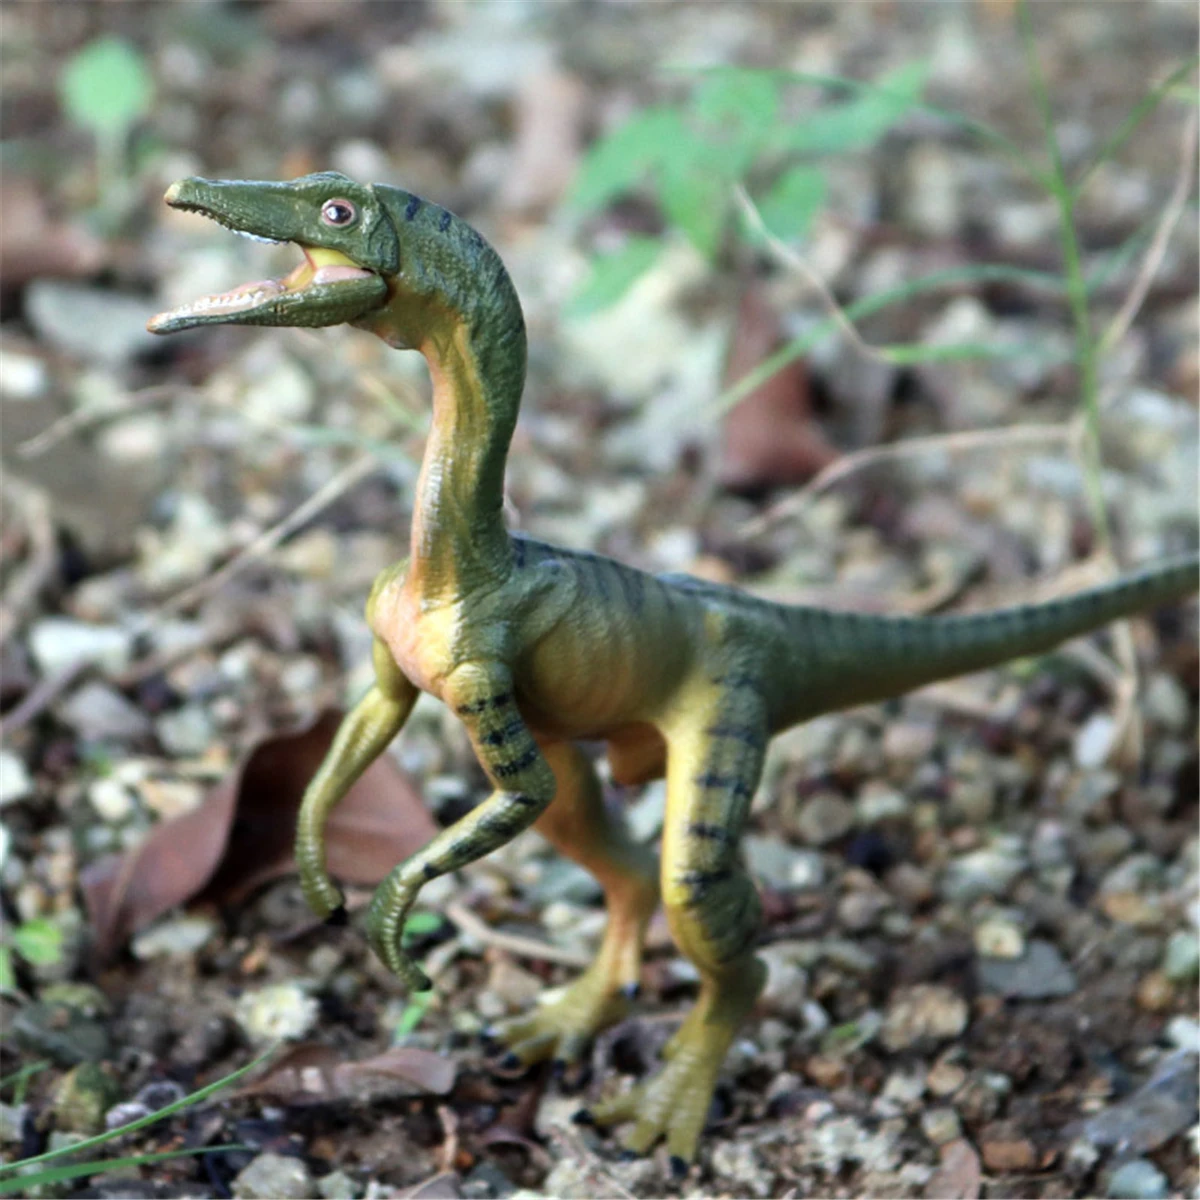 6," Compsognathus фигурка 1/5 динозавр Декор модель животного коллектор развивающие игрушки украшения подарок на день рождения ребенка